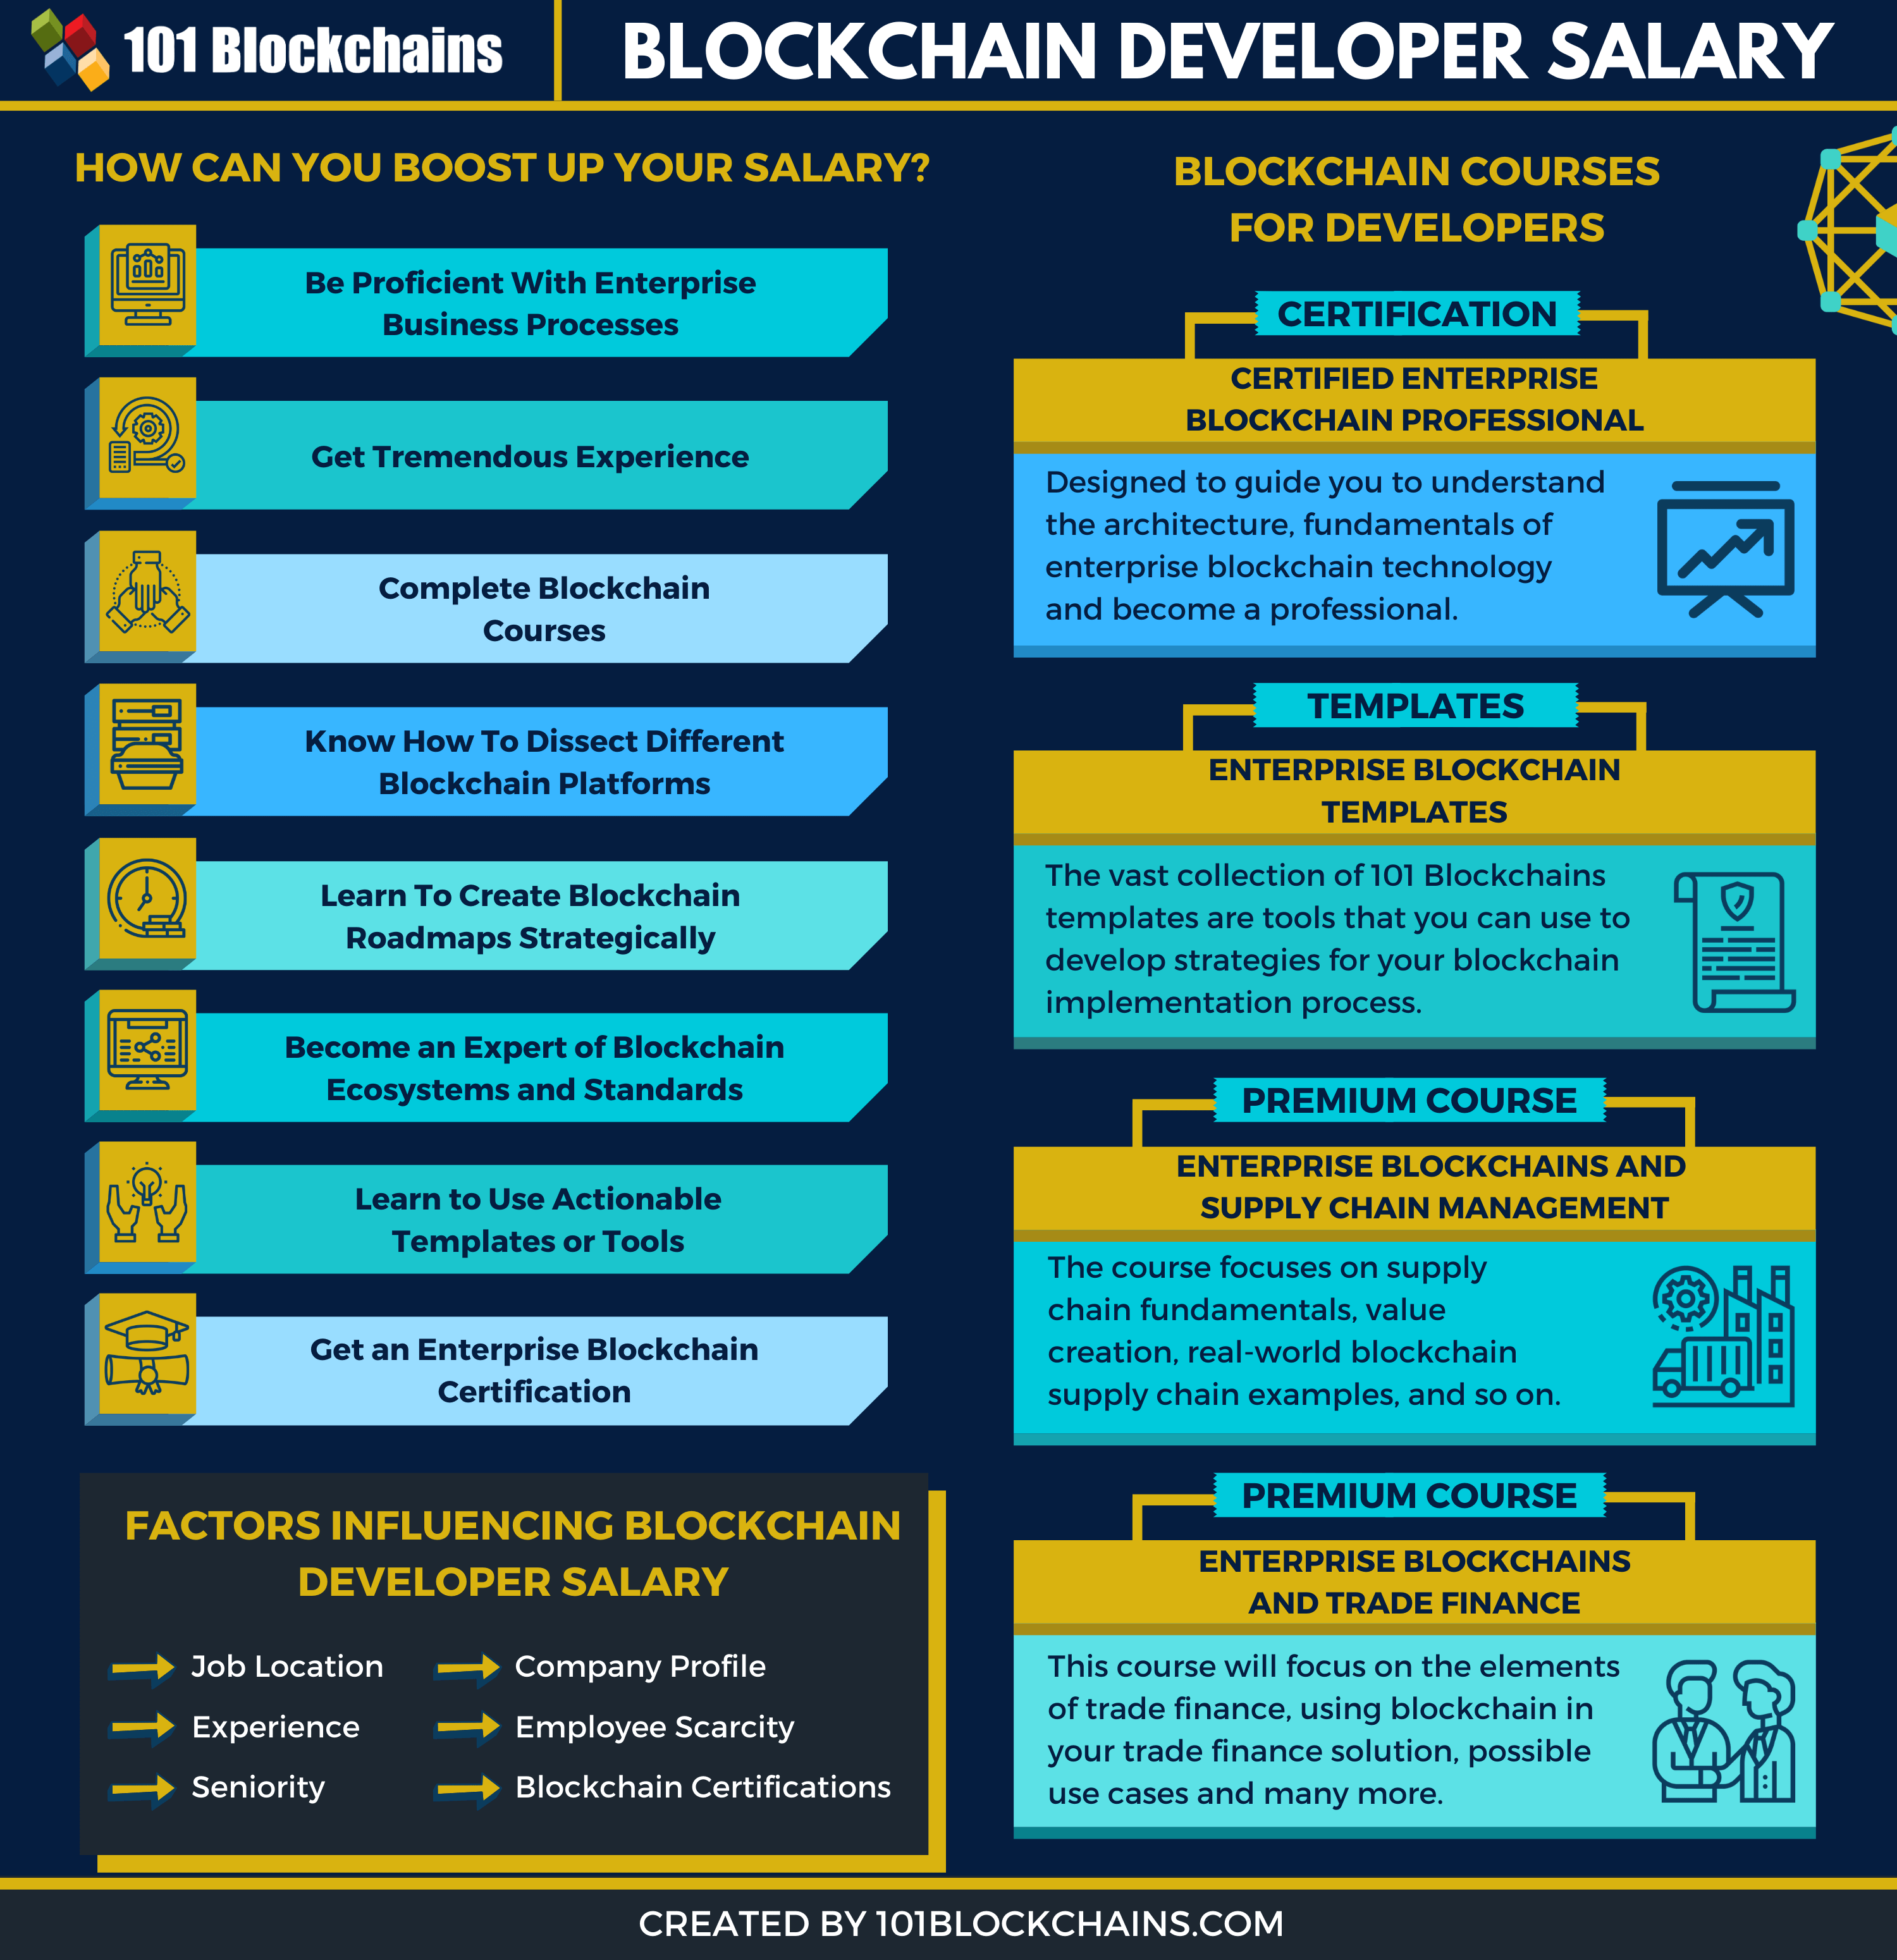 Blockchain Developer Salary